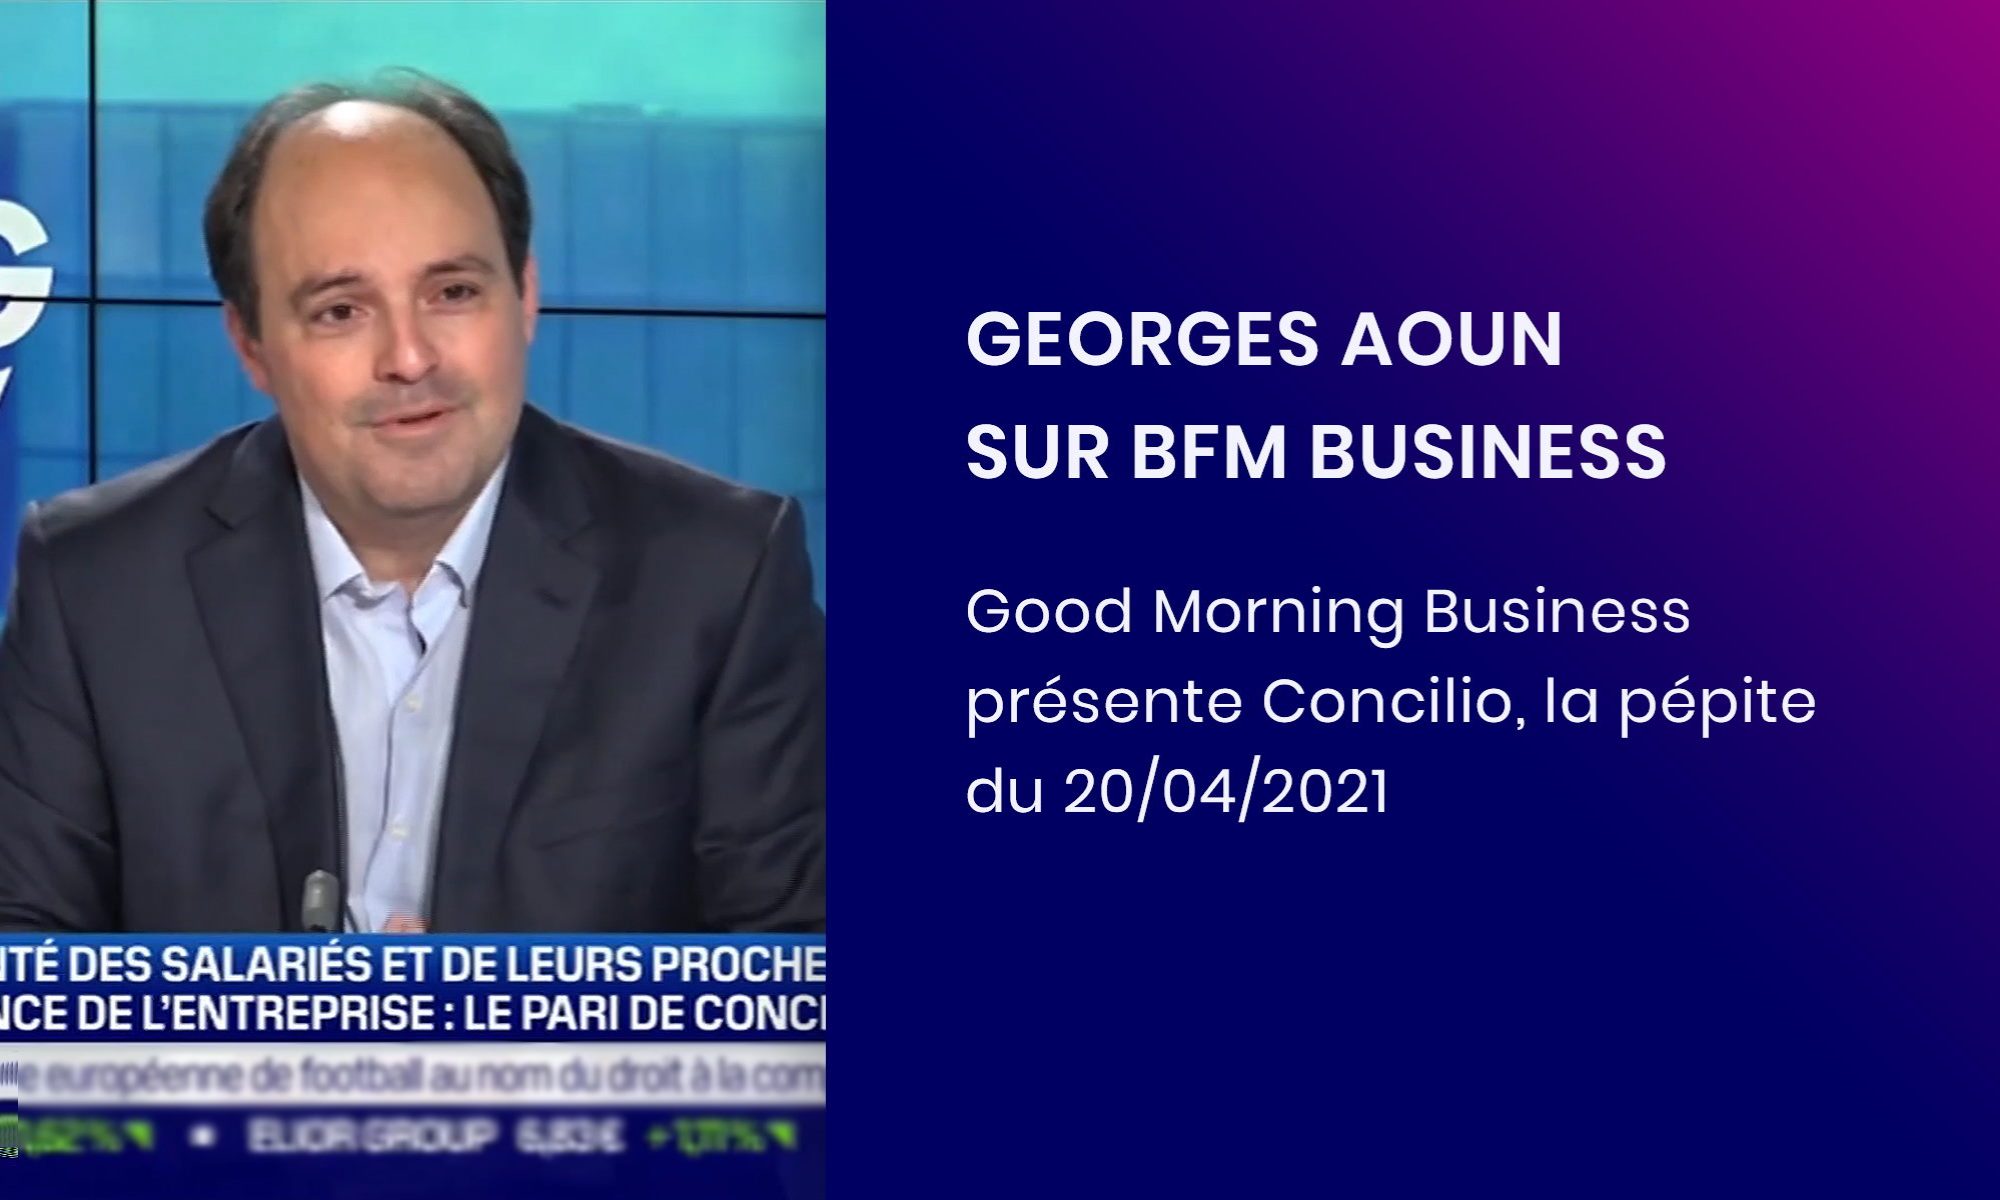 Georges Aoun en interview sur BFM Business dans l'émission "La pépite" 20042021